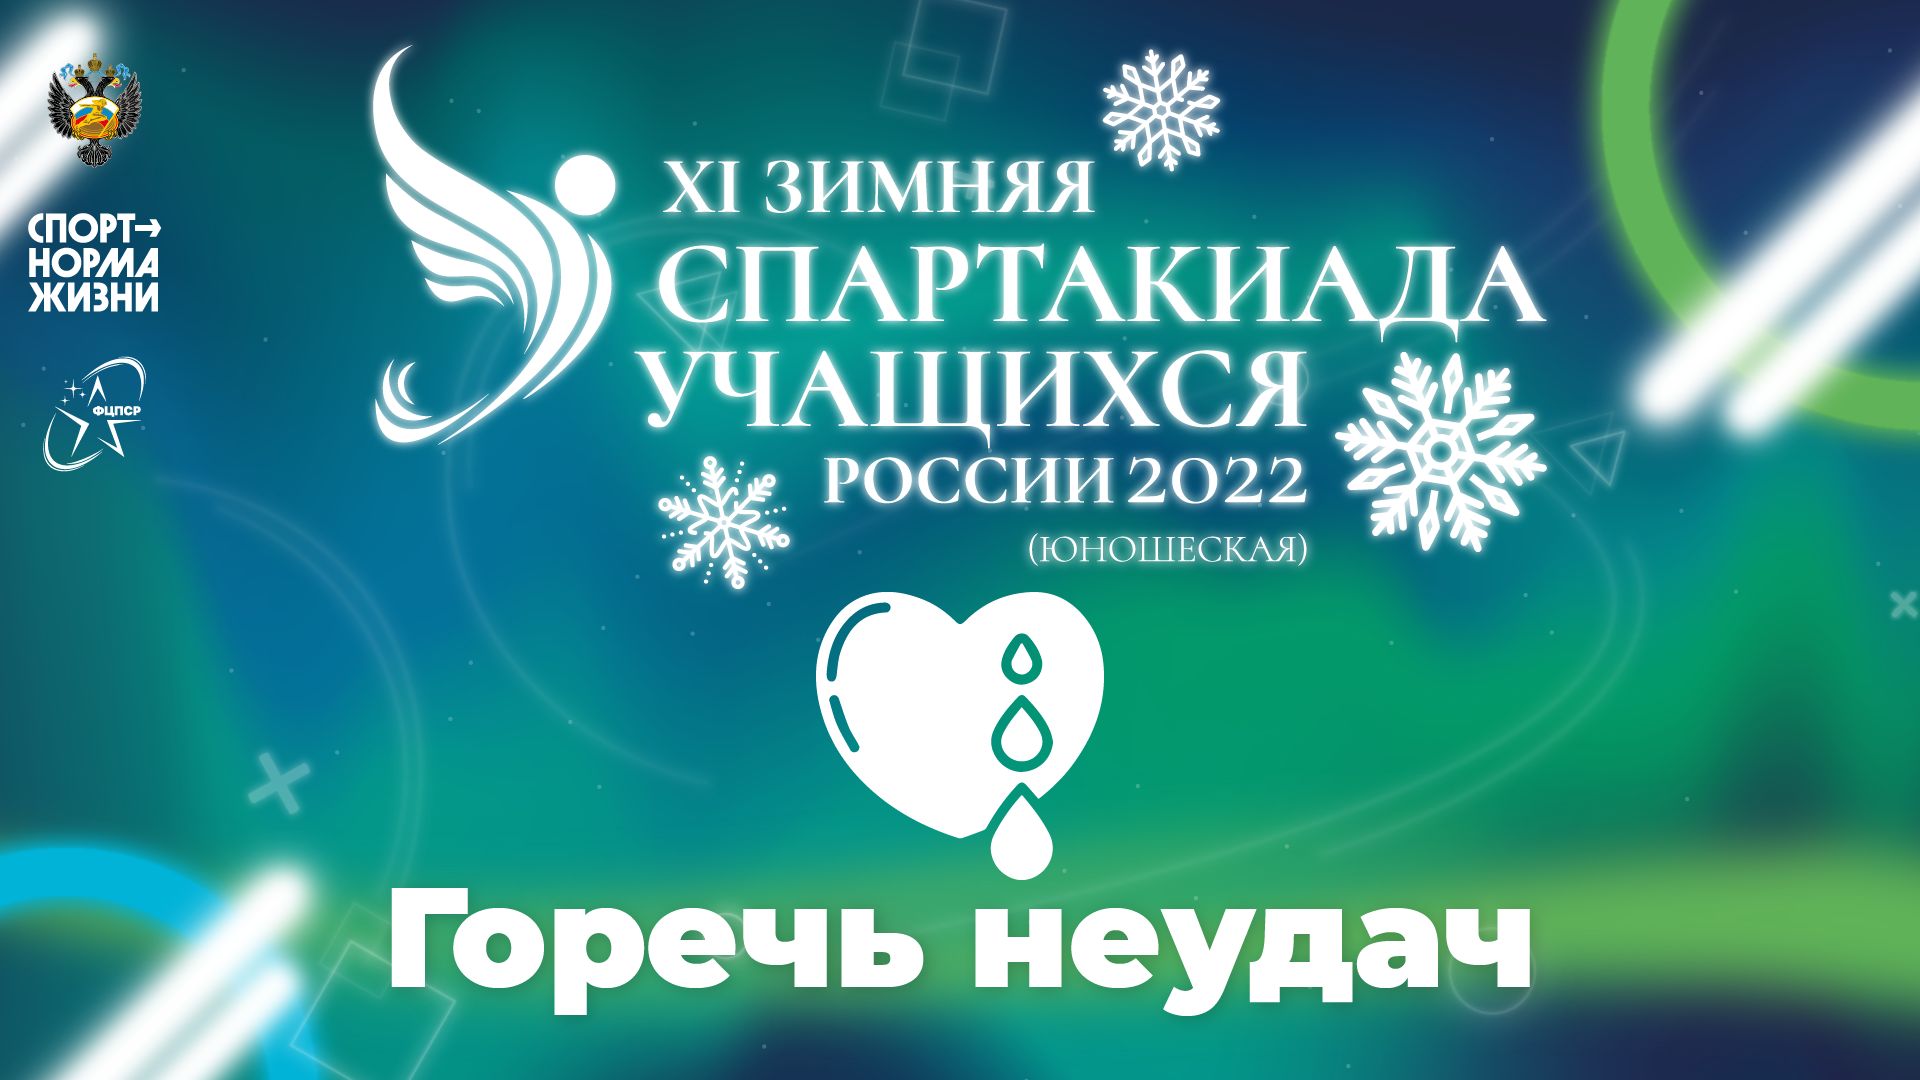 XI зимняя Спартакиада учащихся России 2022 года. Горечь неудач